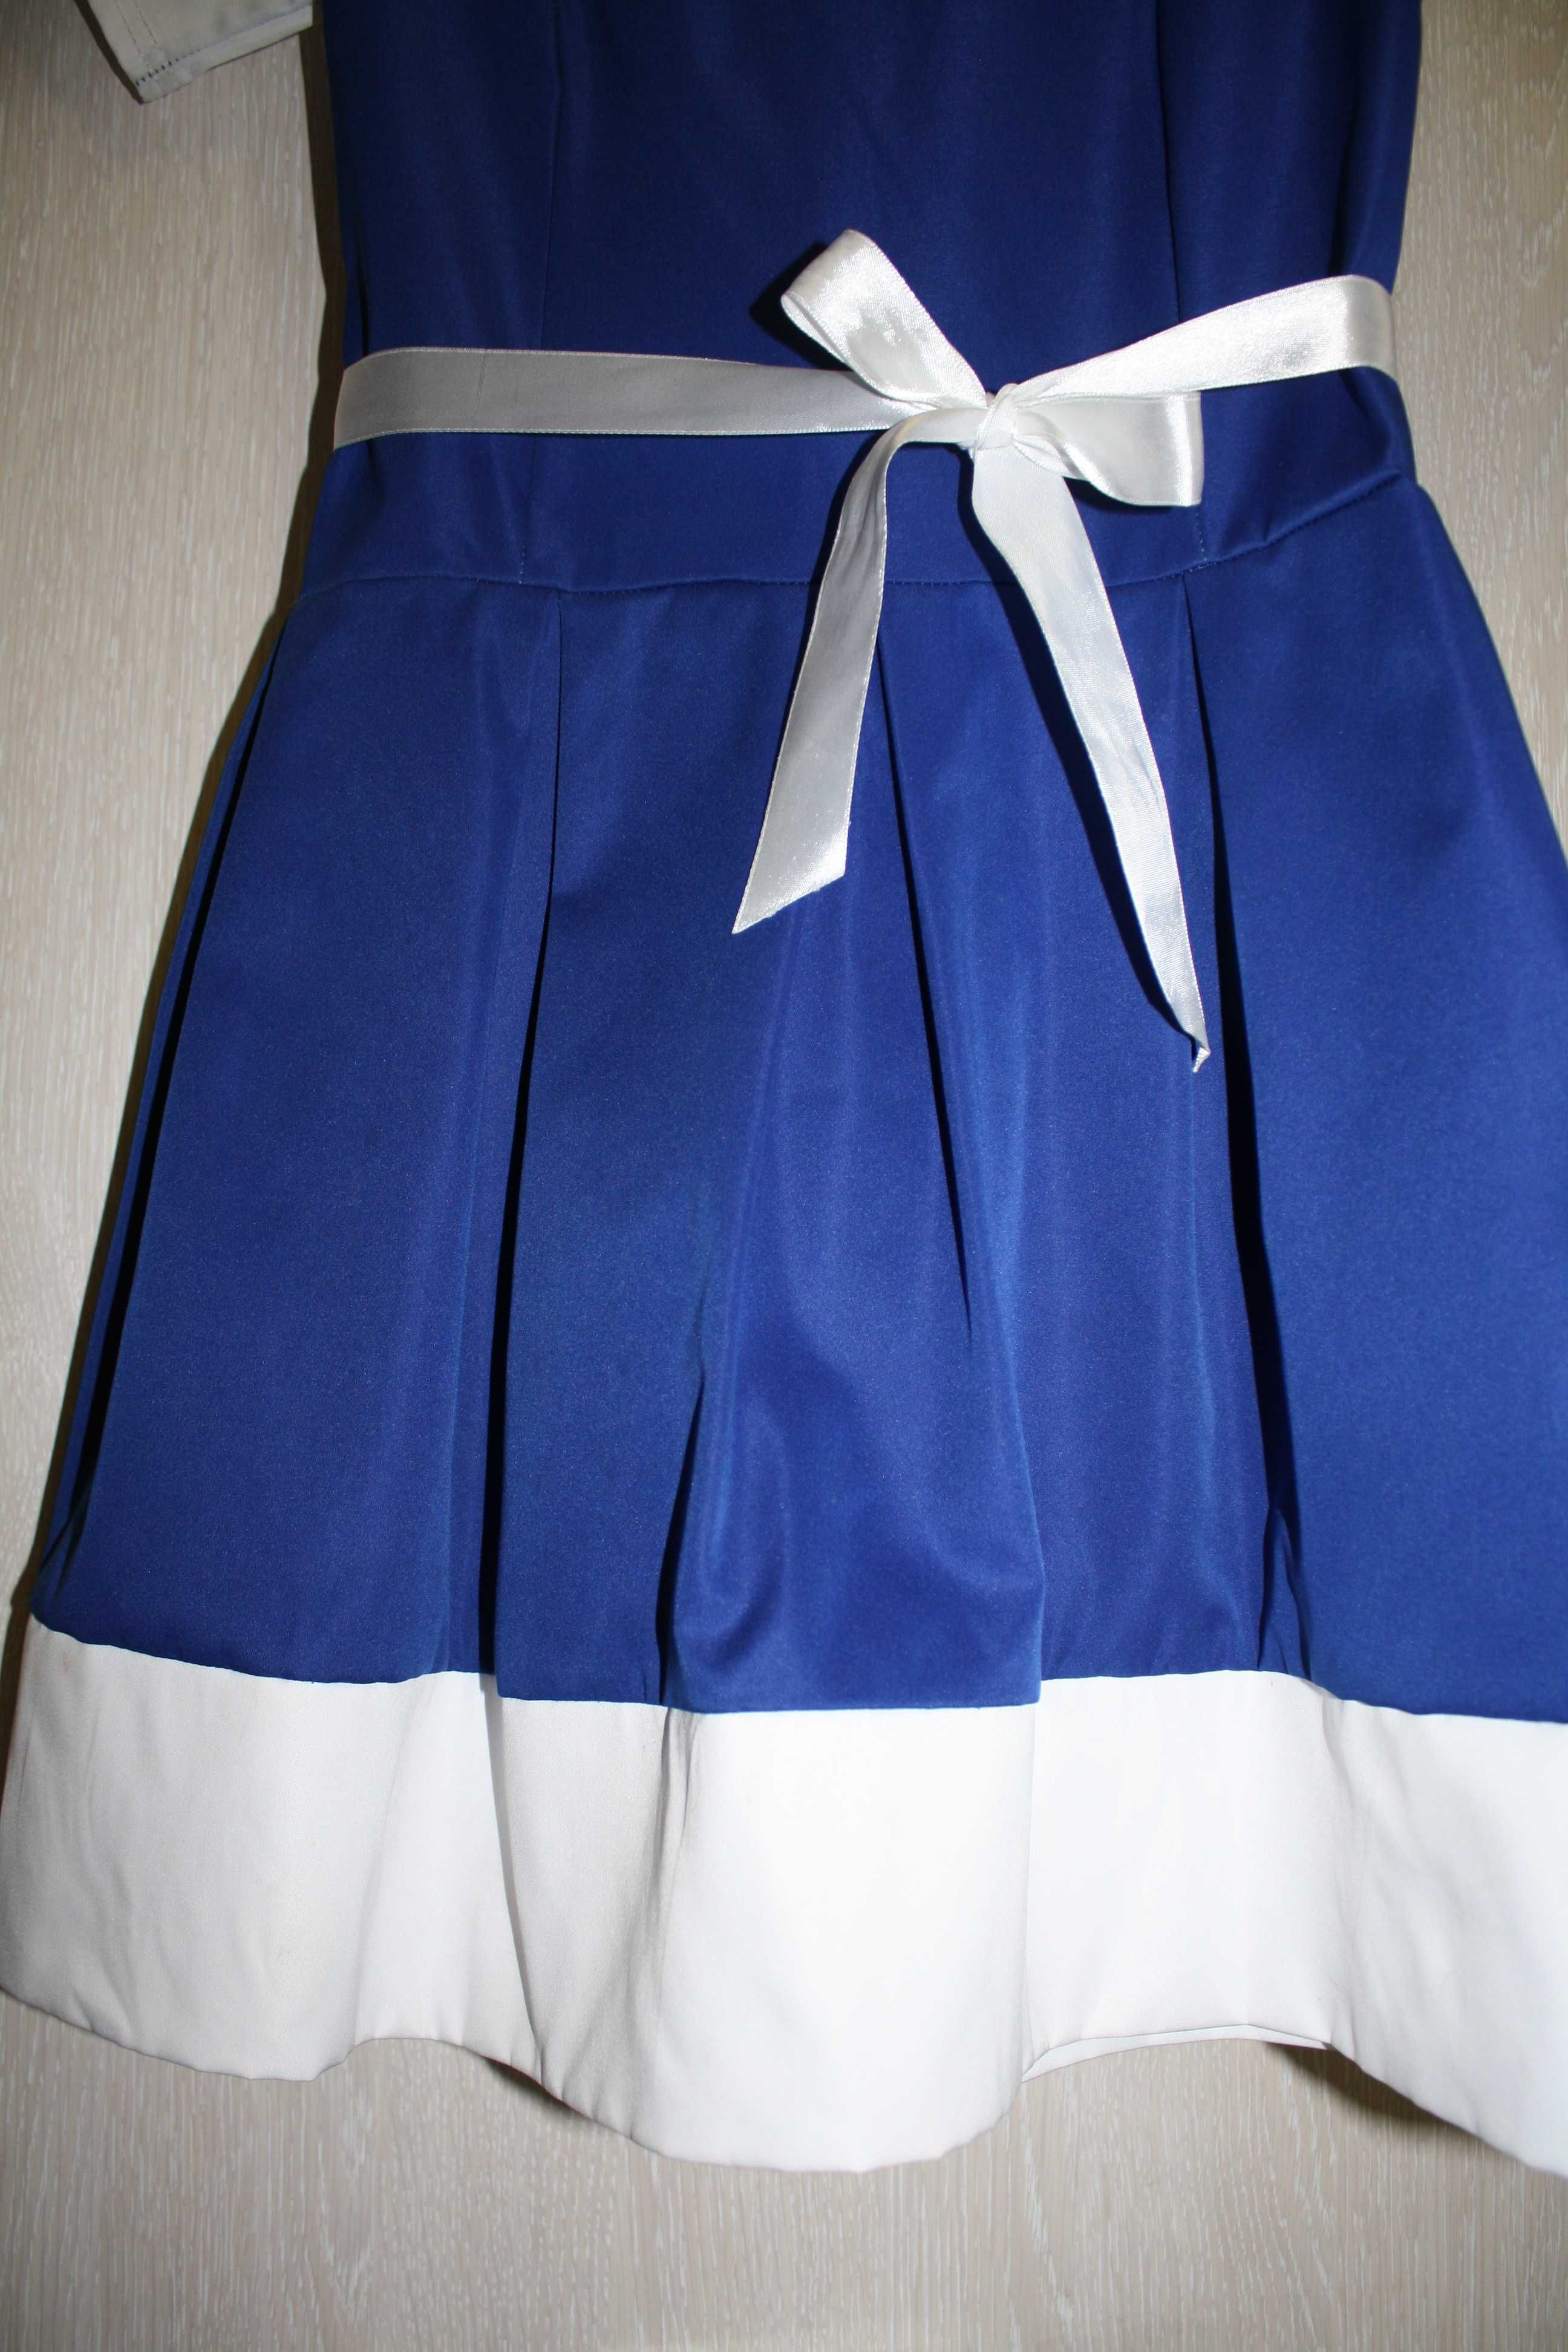 Святкова синя сукня р. 42-44 для лівчинки 11-12 років